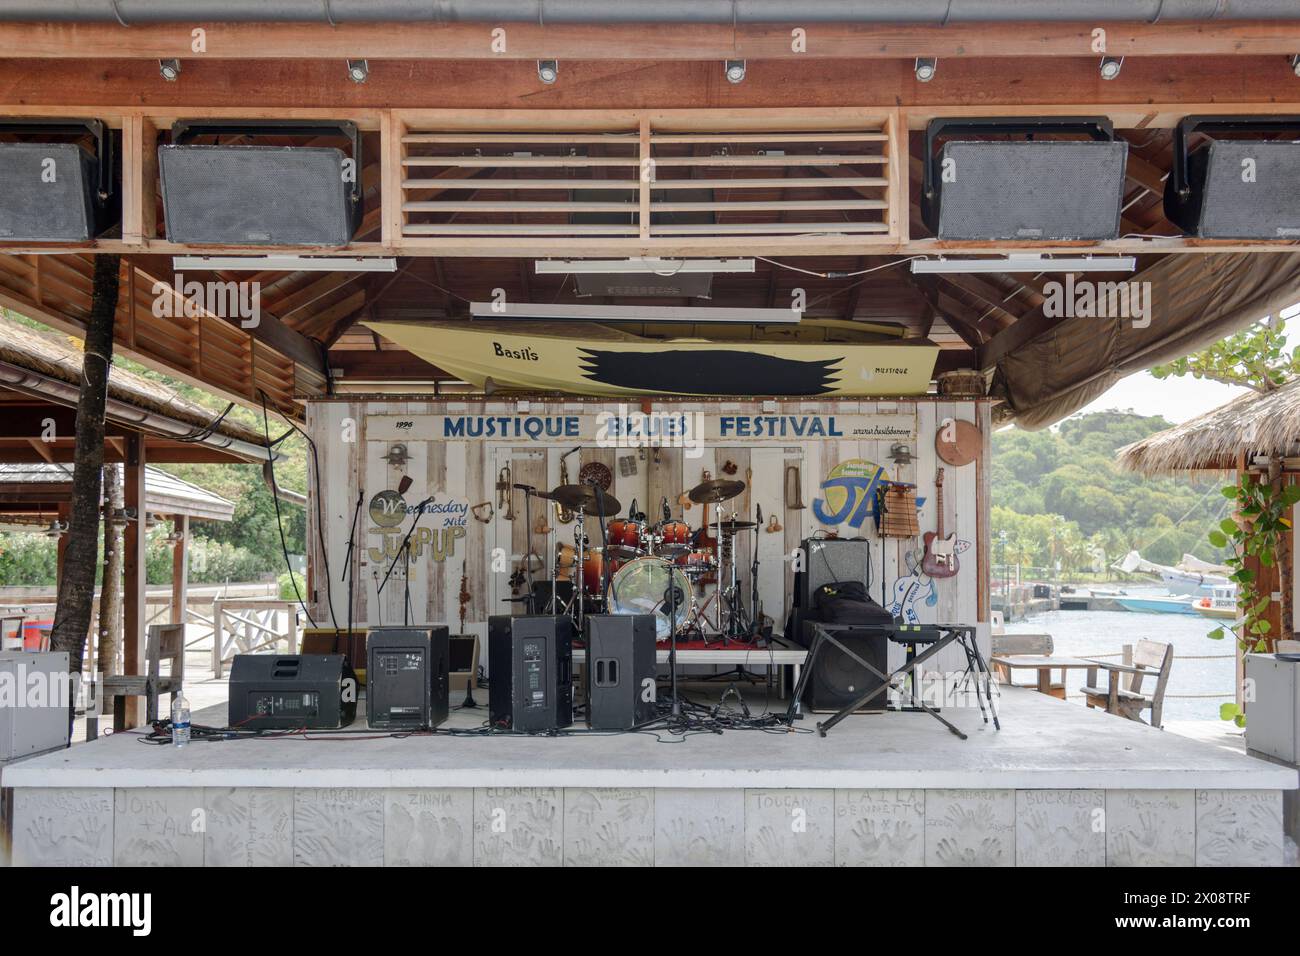 L'annuale Mustique Blues Festival si svolge presso il leggendario Basill's Bar di Britannia Bay, Mustique Island, St Vincent e Grenadine, Caraibi Foto Stock